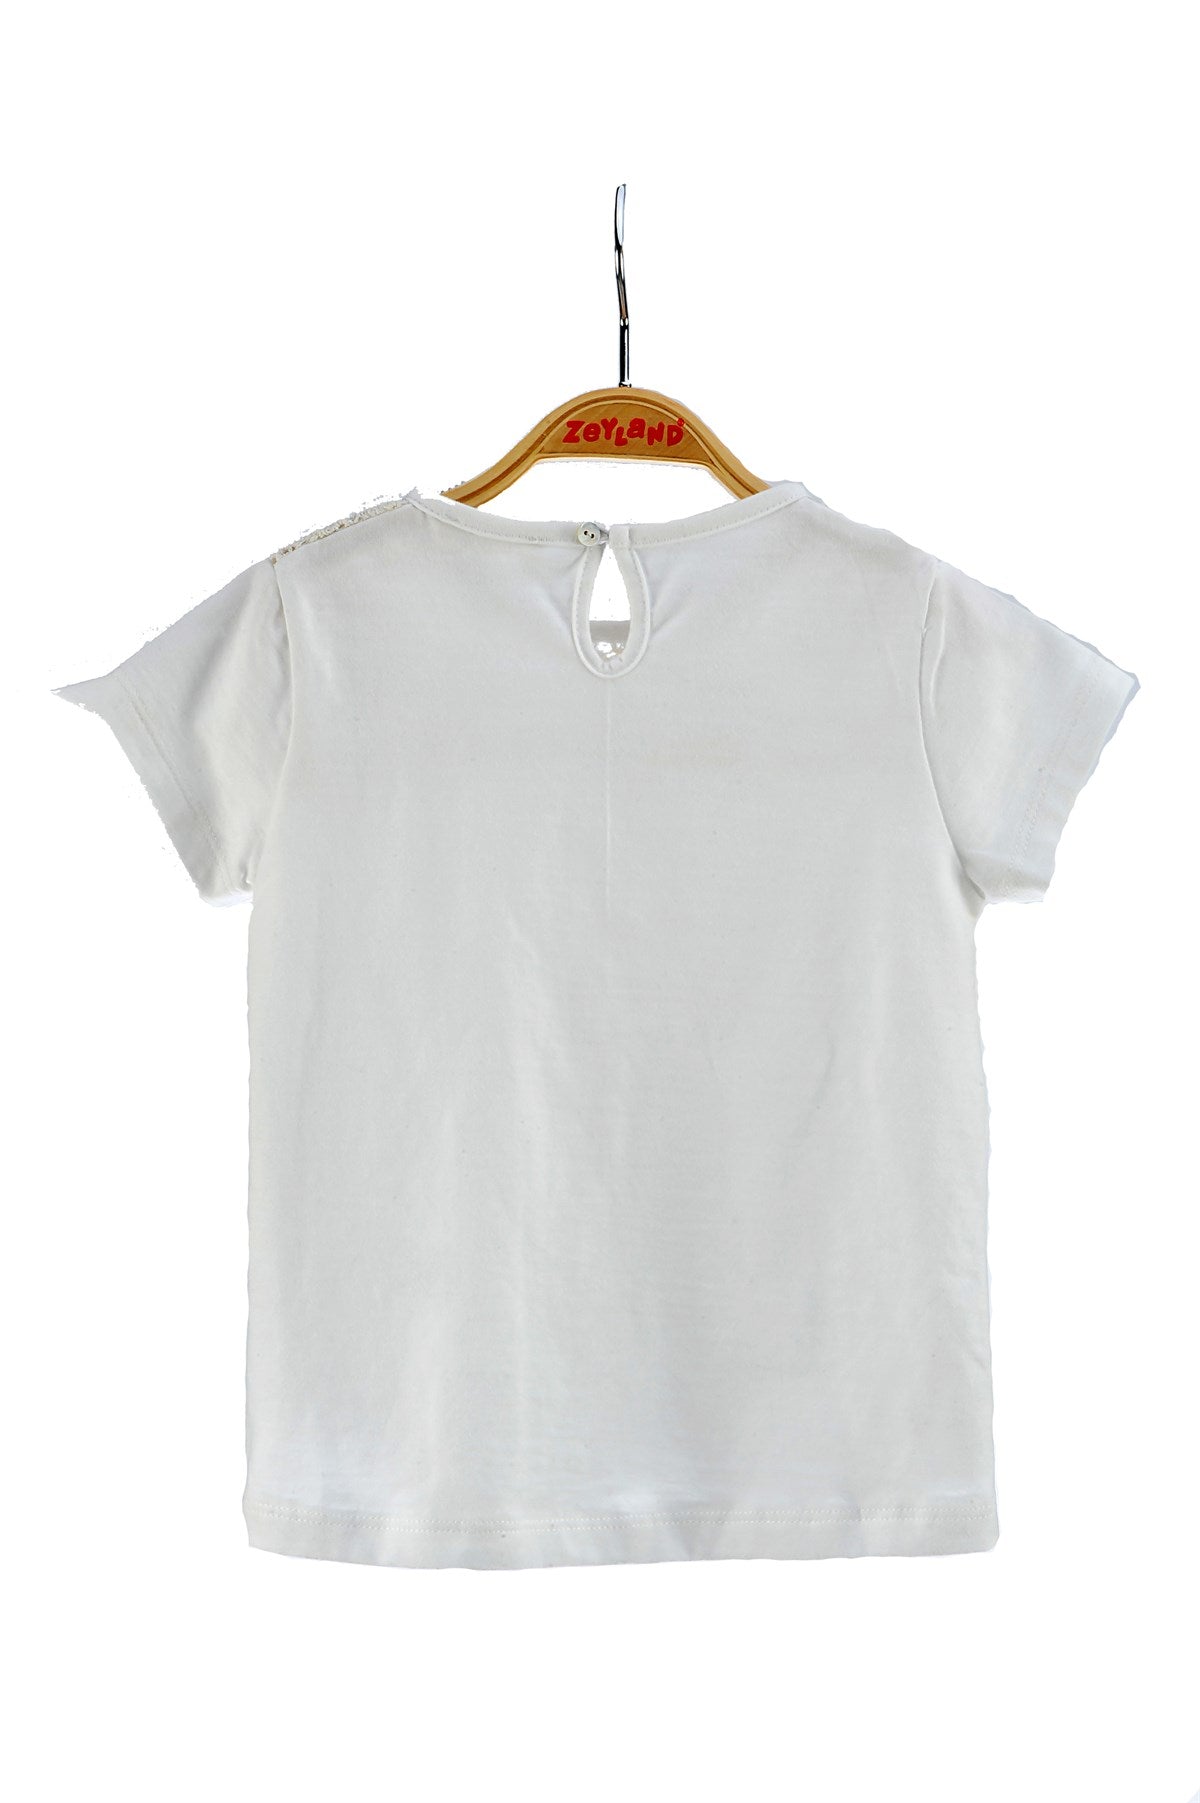 Kız Çocuk Ekru Dantelli T-Shirt (6ay-4yaş)-1